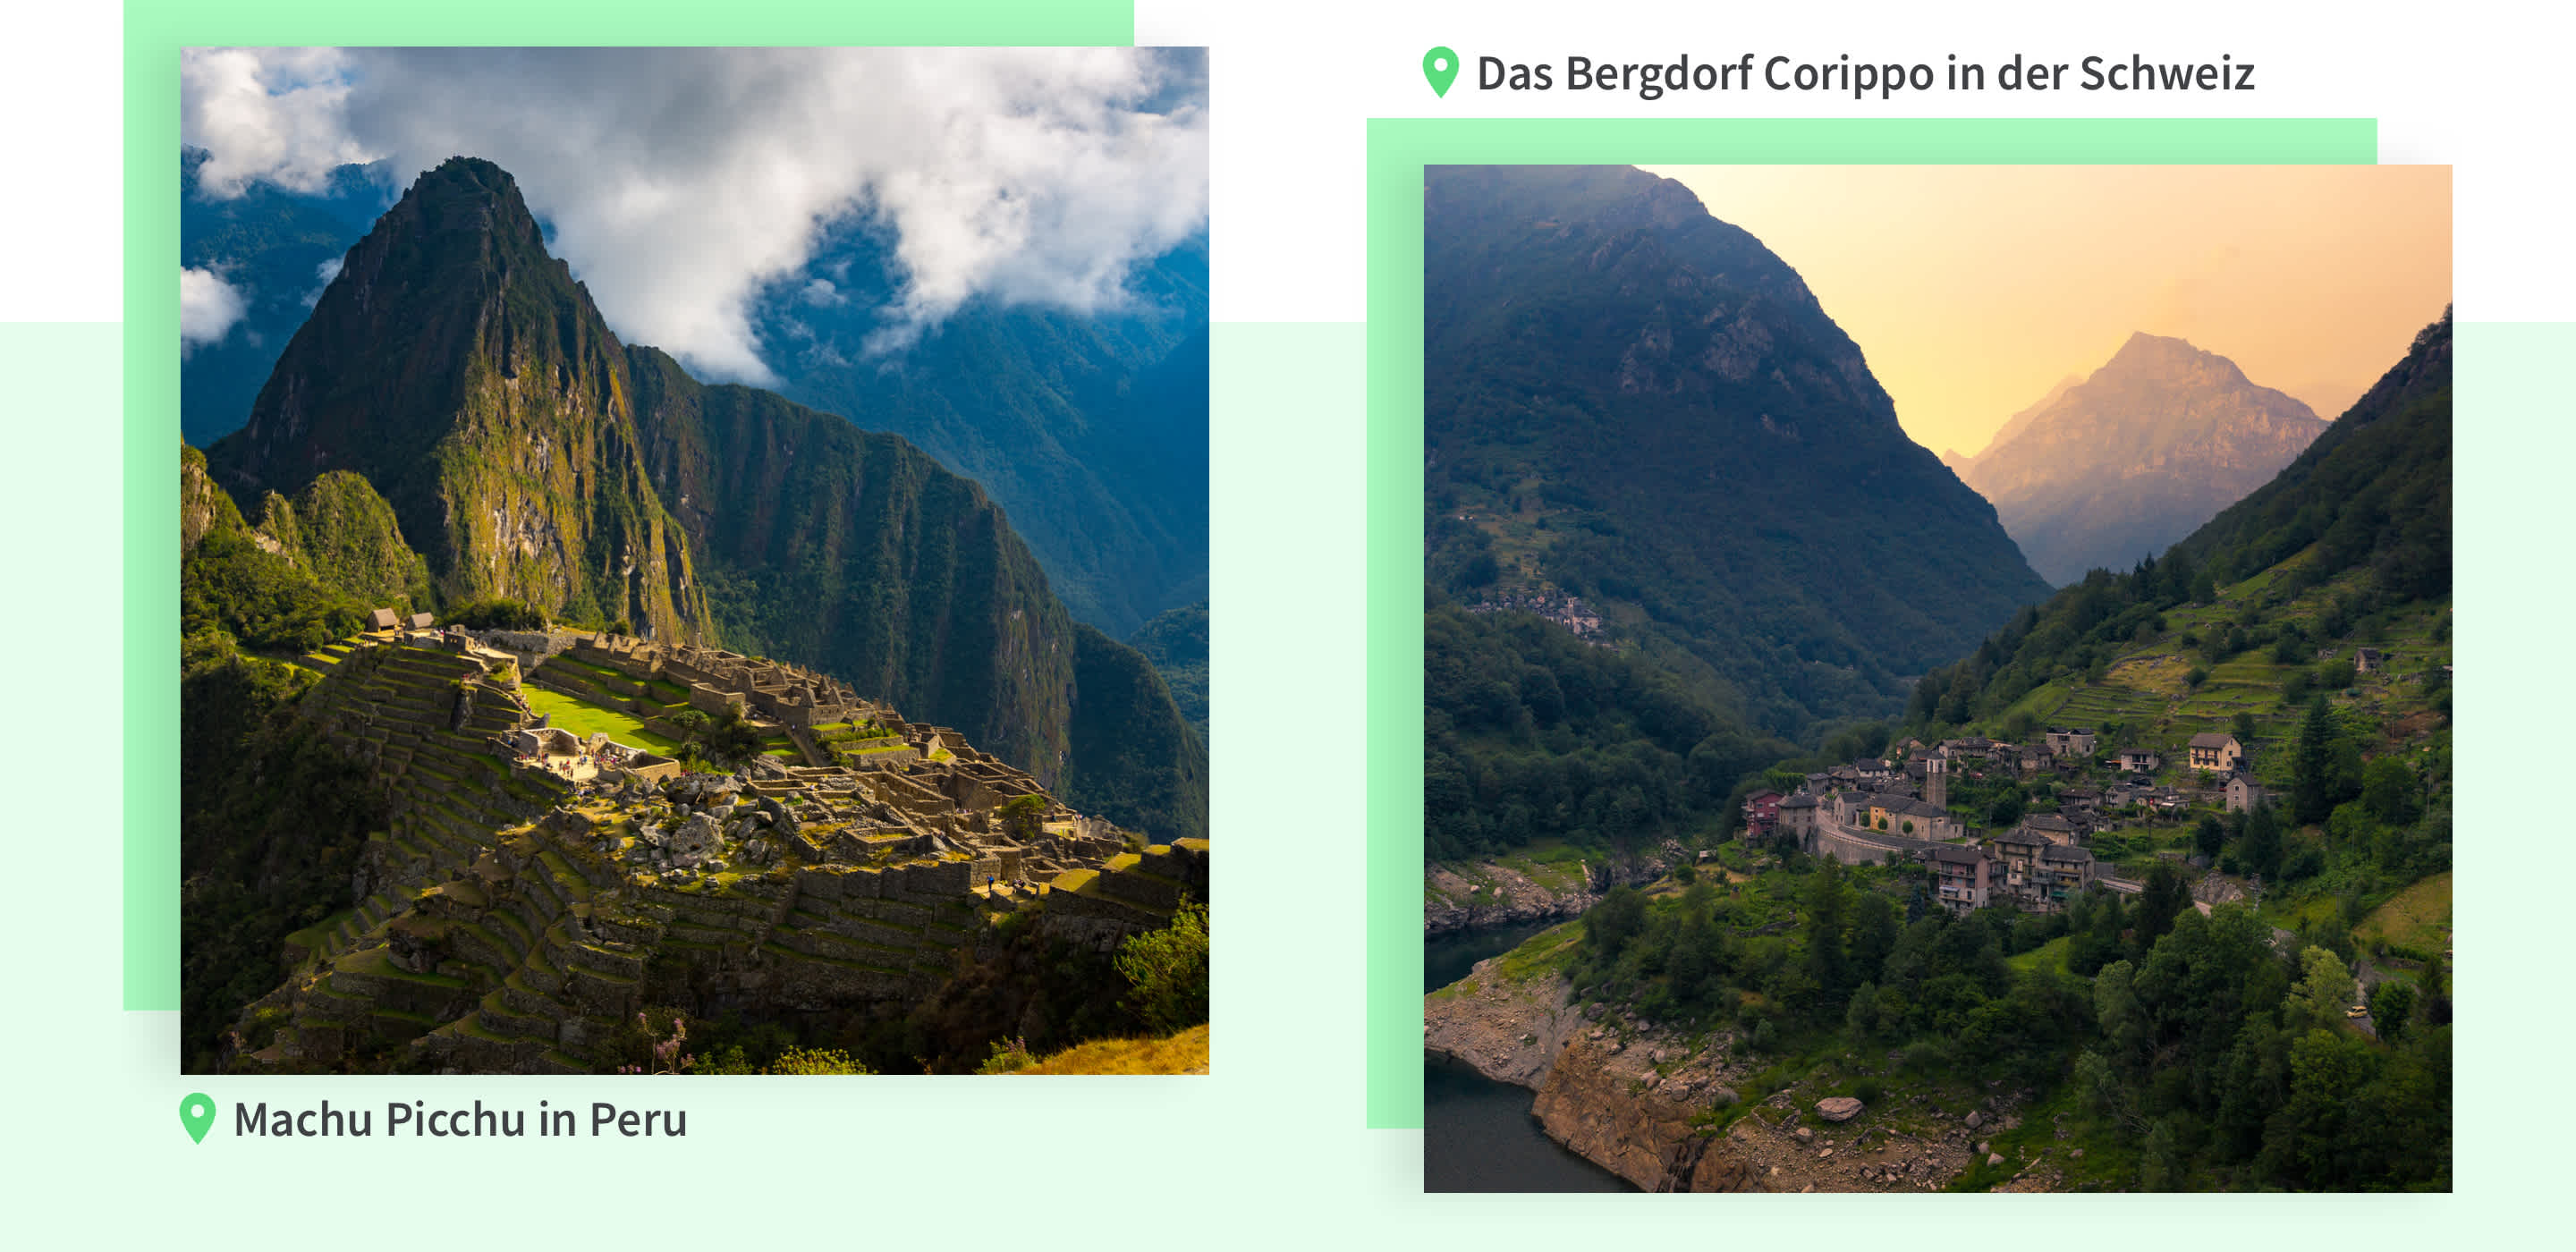 Machu Picchu vs. Bergdorf Corippo in der Schweiz